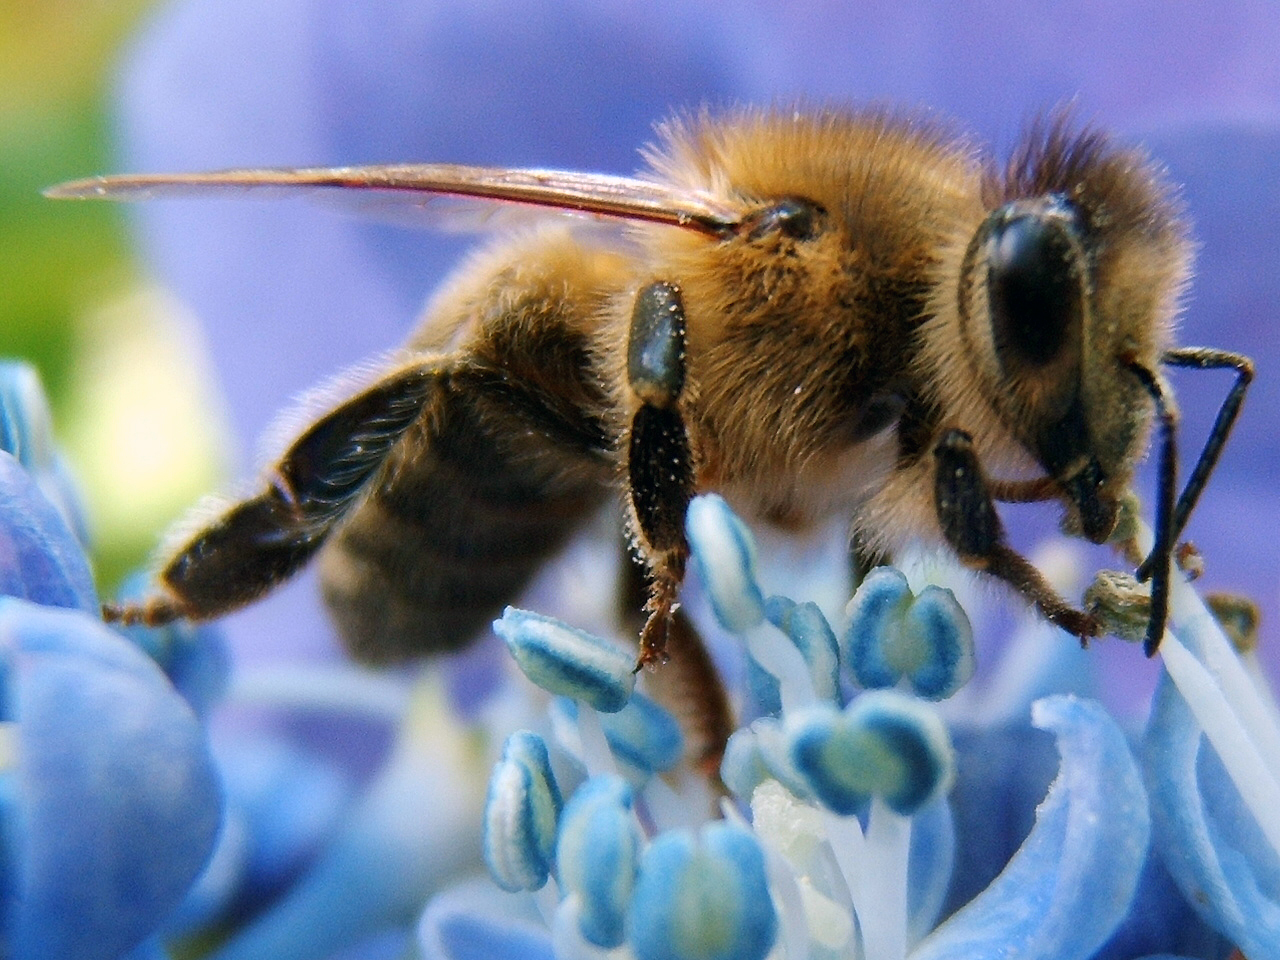 Ce înseamnă, cu adevărat, să fii o albină, insecta fără de care nu ar exista viaţă pe Pământ